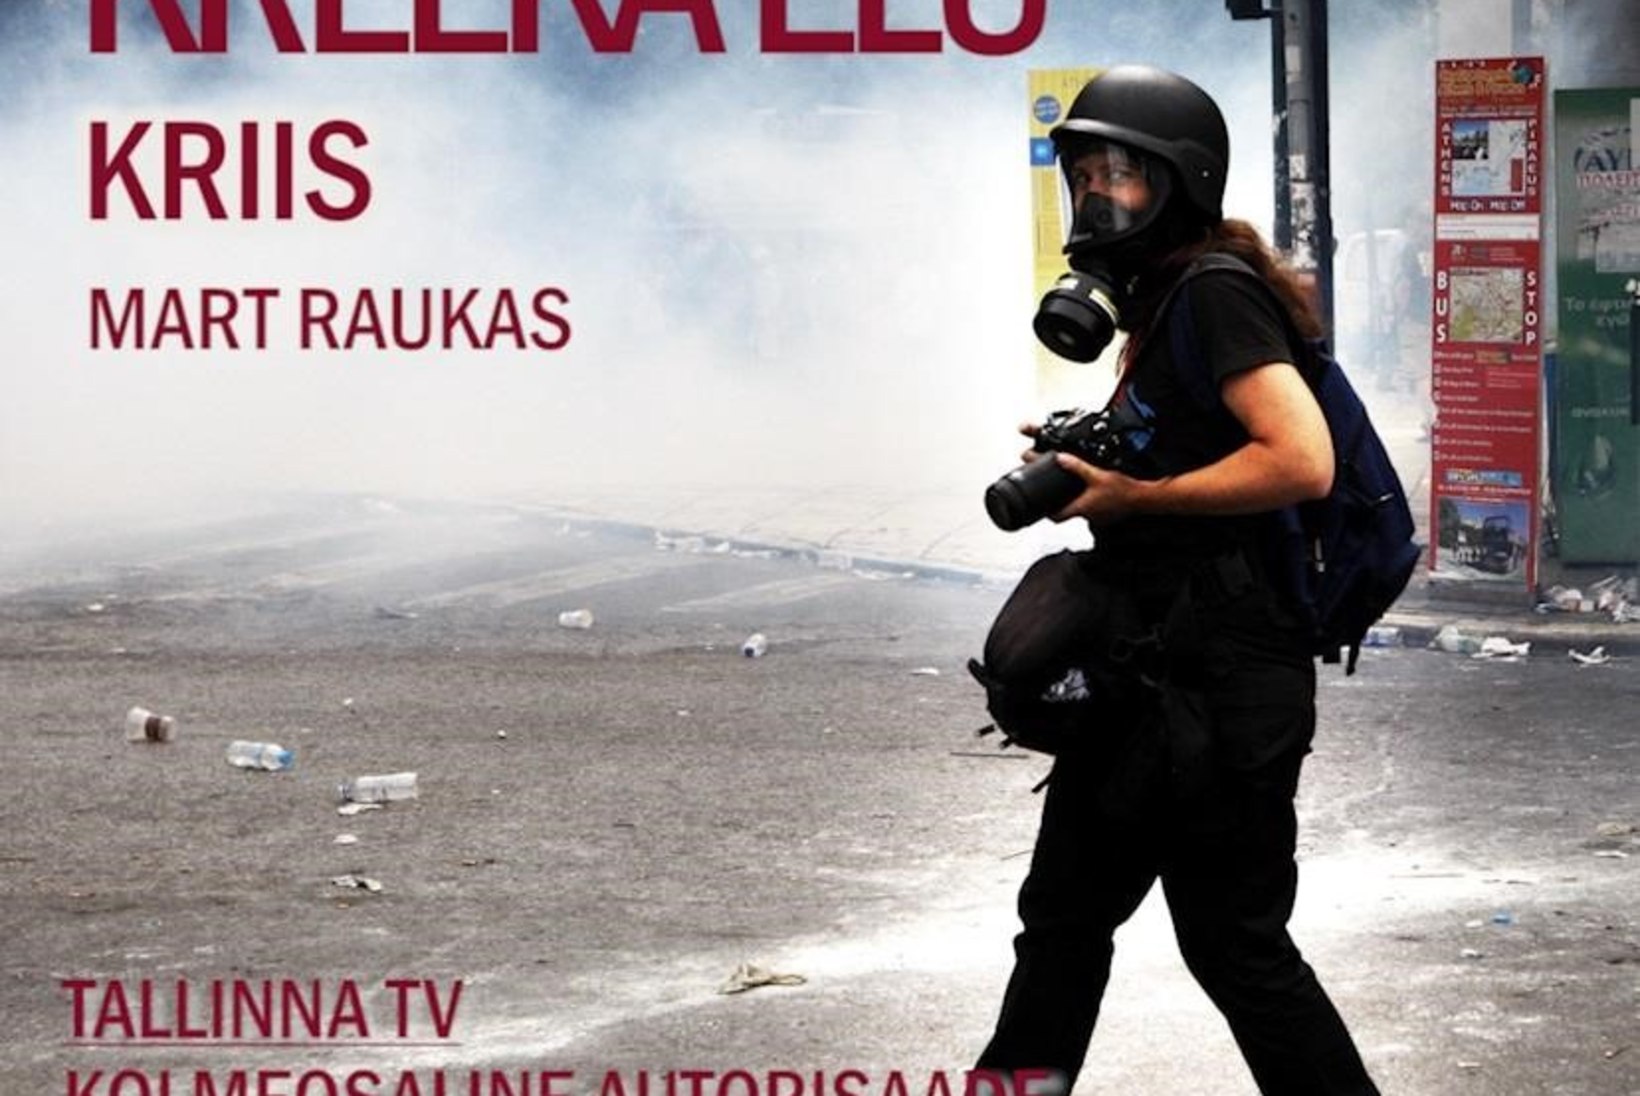 VIDEO | Kreekasse kolinud eesti mõtleja paljastab uues telesaates sealse tegeliku elu – esimene osa „Kriis“